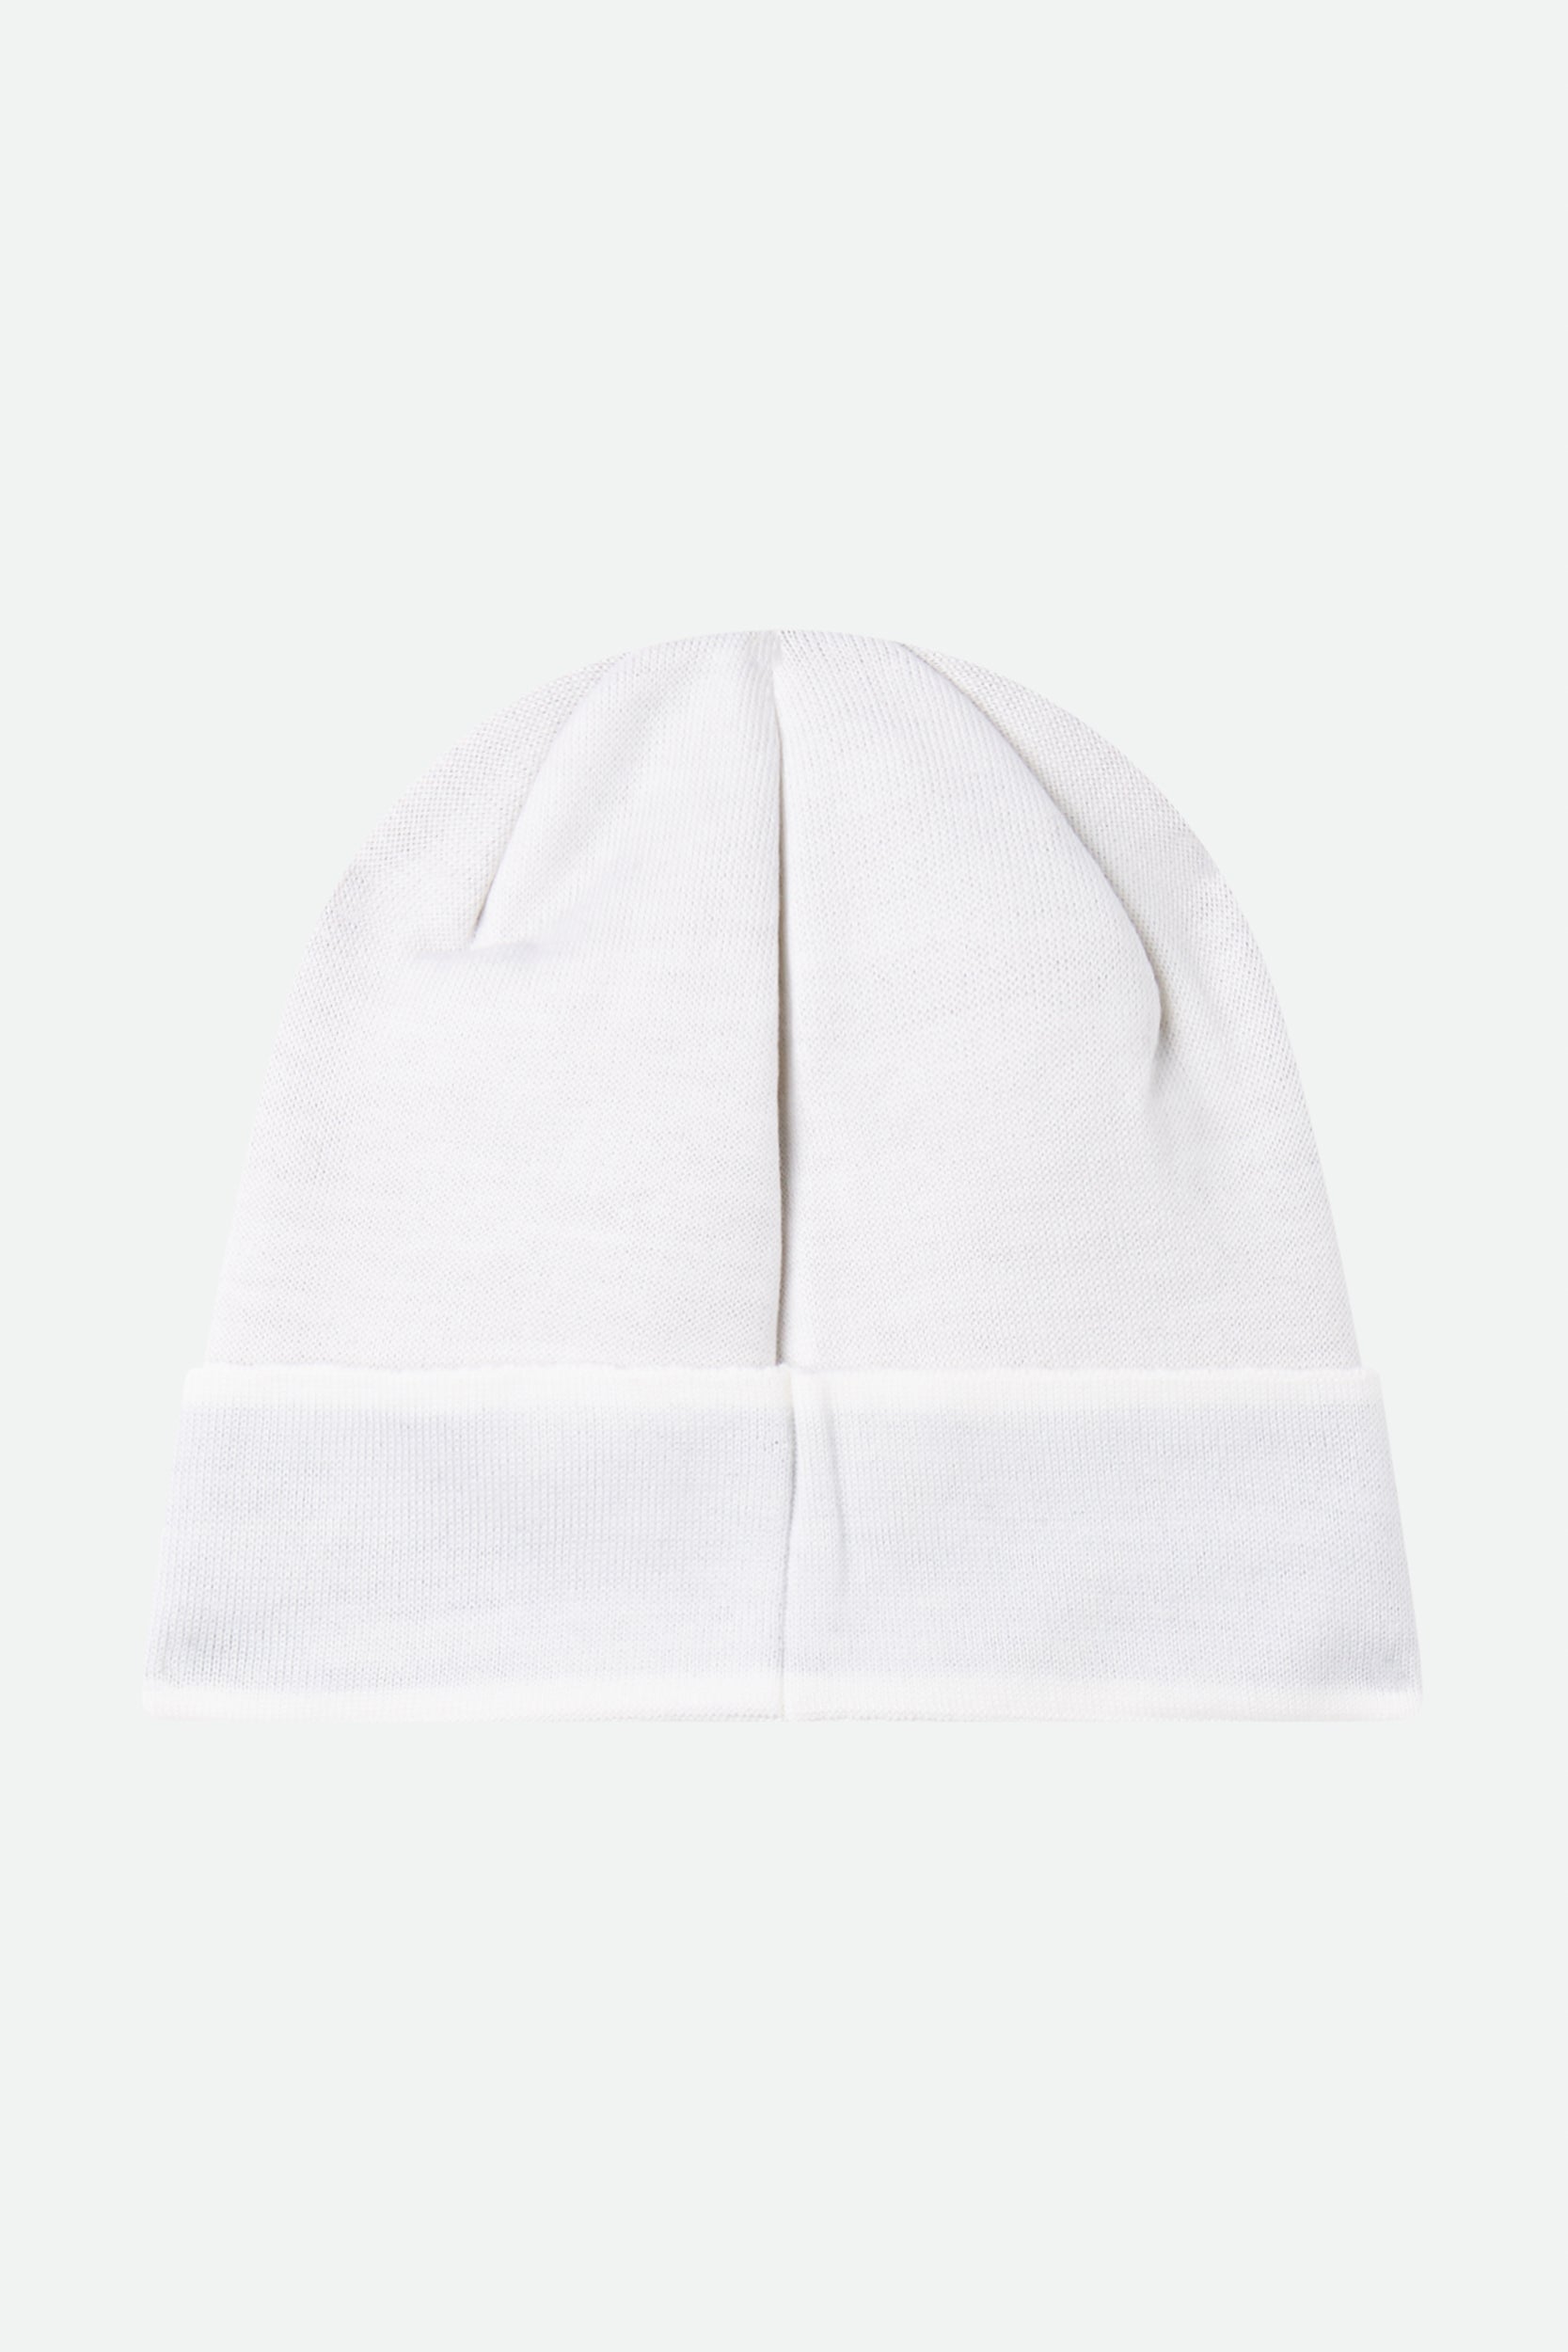 Moschino White Wool Hat